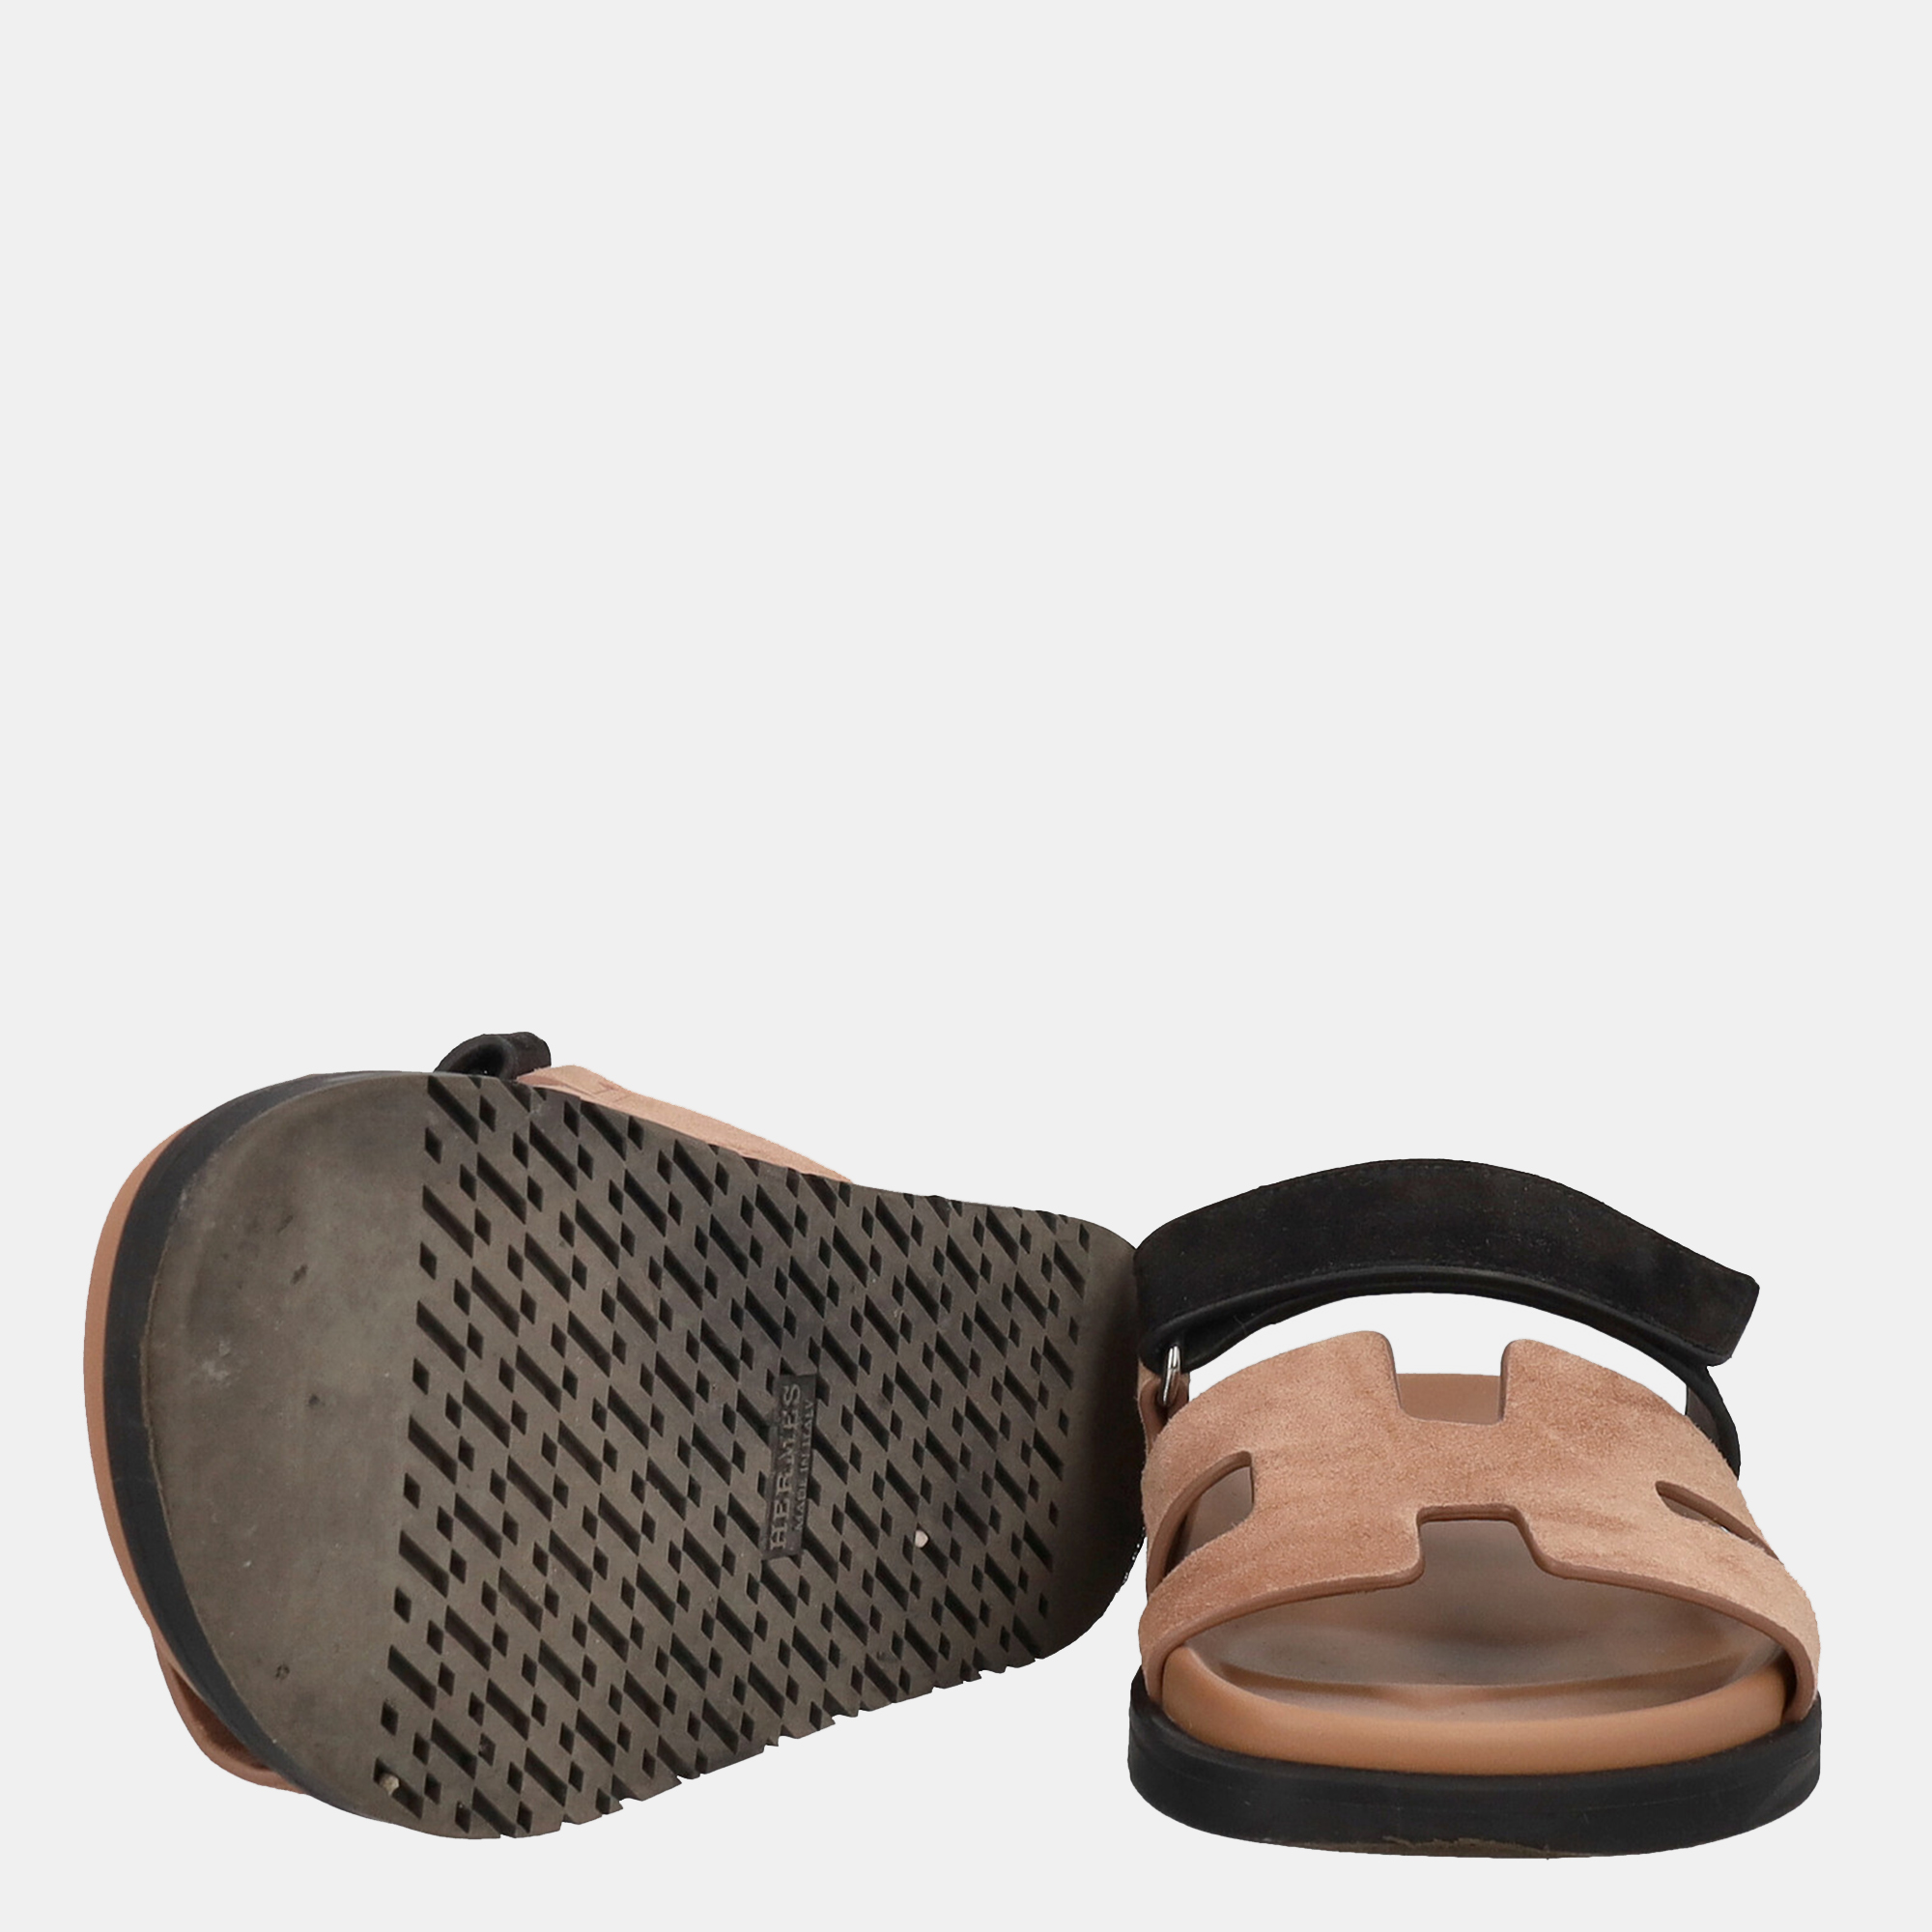 Hermès Women's Leather Slippers - Beige - EU 36